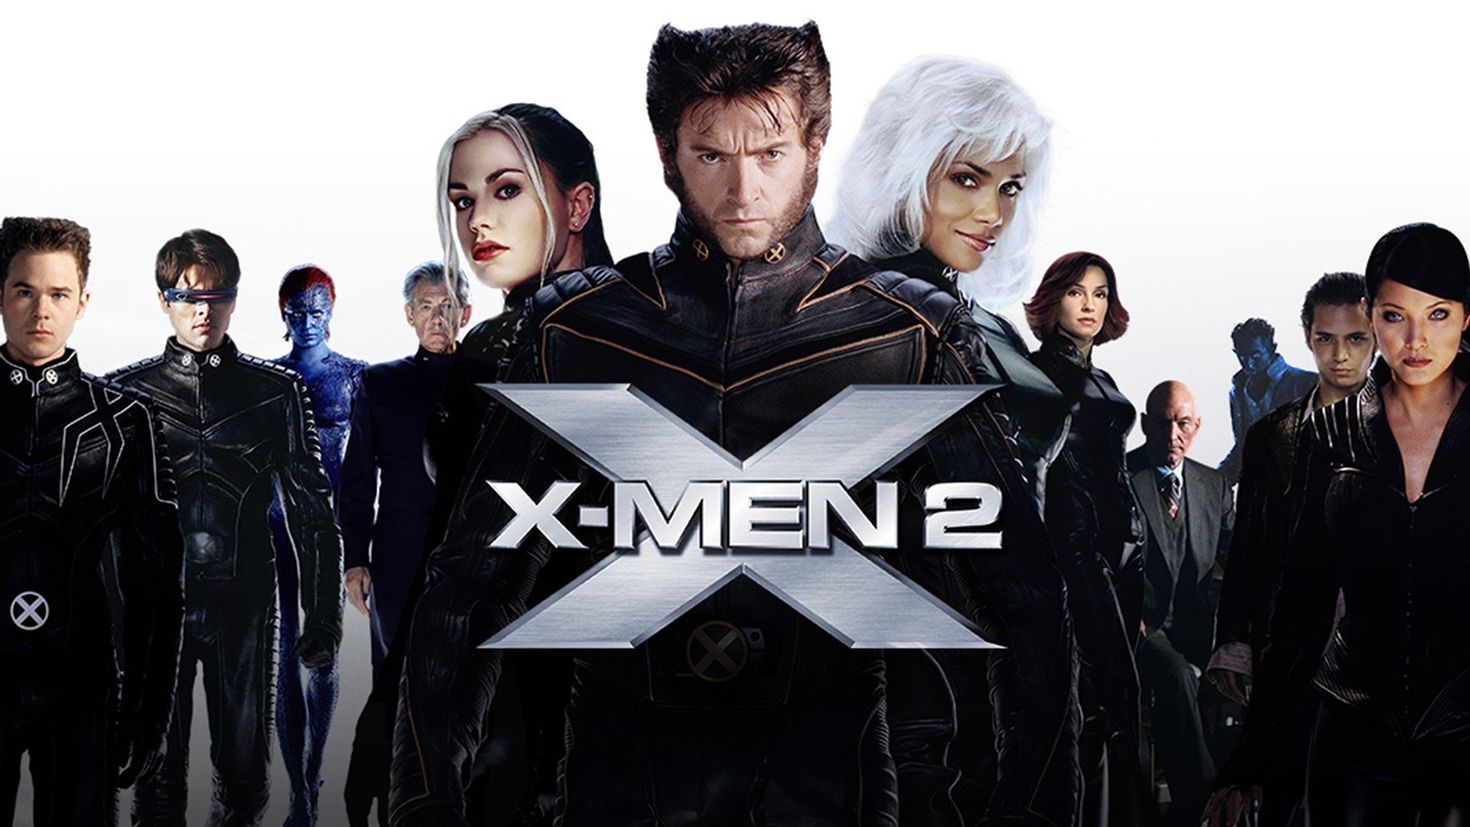 Длс икс. X-men 2 2003. Люди Икс 2 2003 обложка. X-men 2000. X men 2 Marvel.